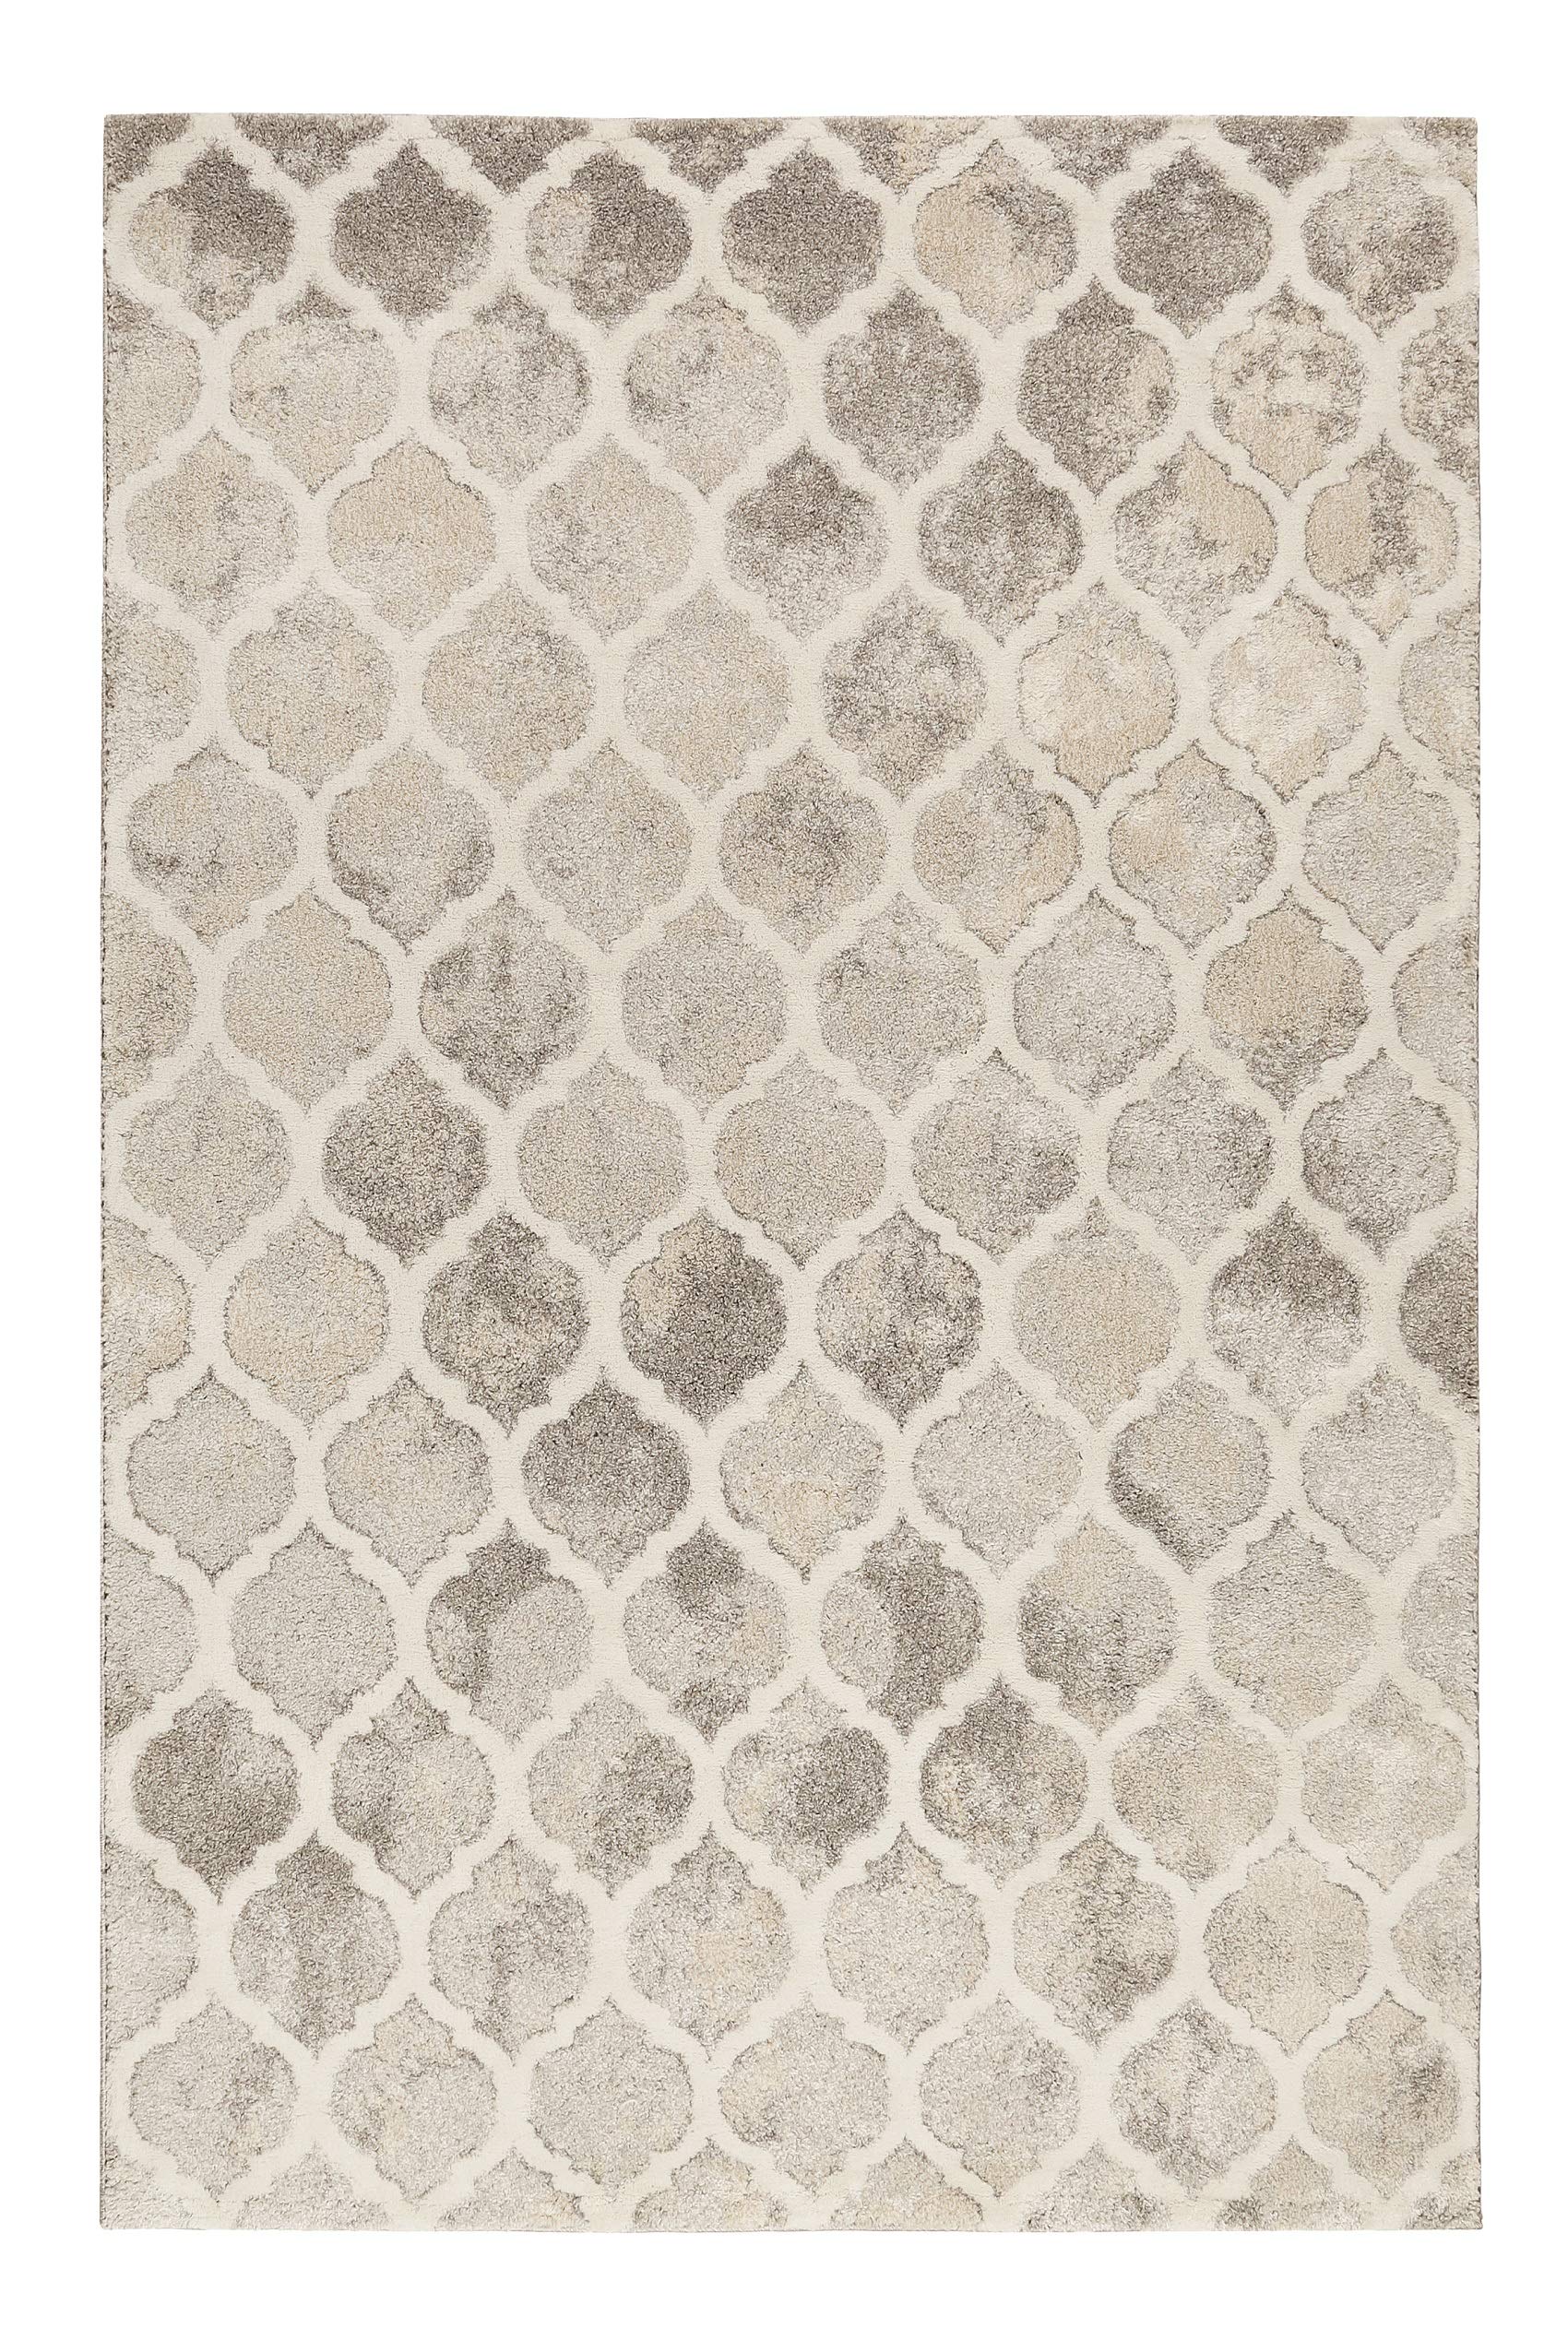 Weicher Softer Vintage Teppich - Läufer für Wohnzimmer, Flur, Schlafzimmer, Replay (80 x 150 cm, beige grau)